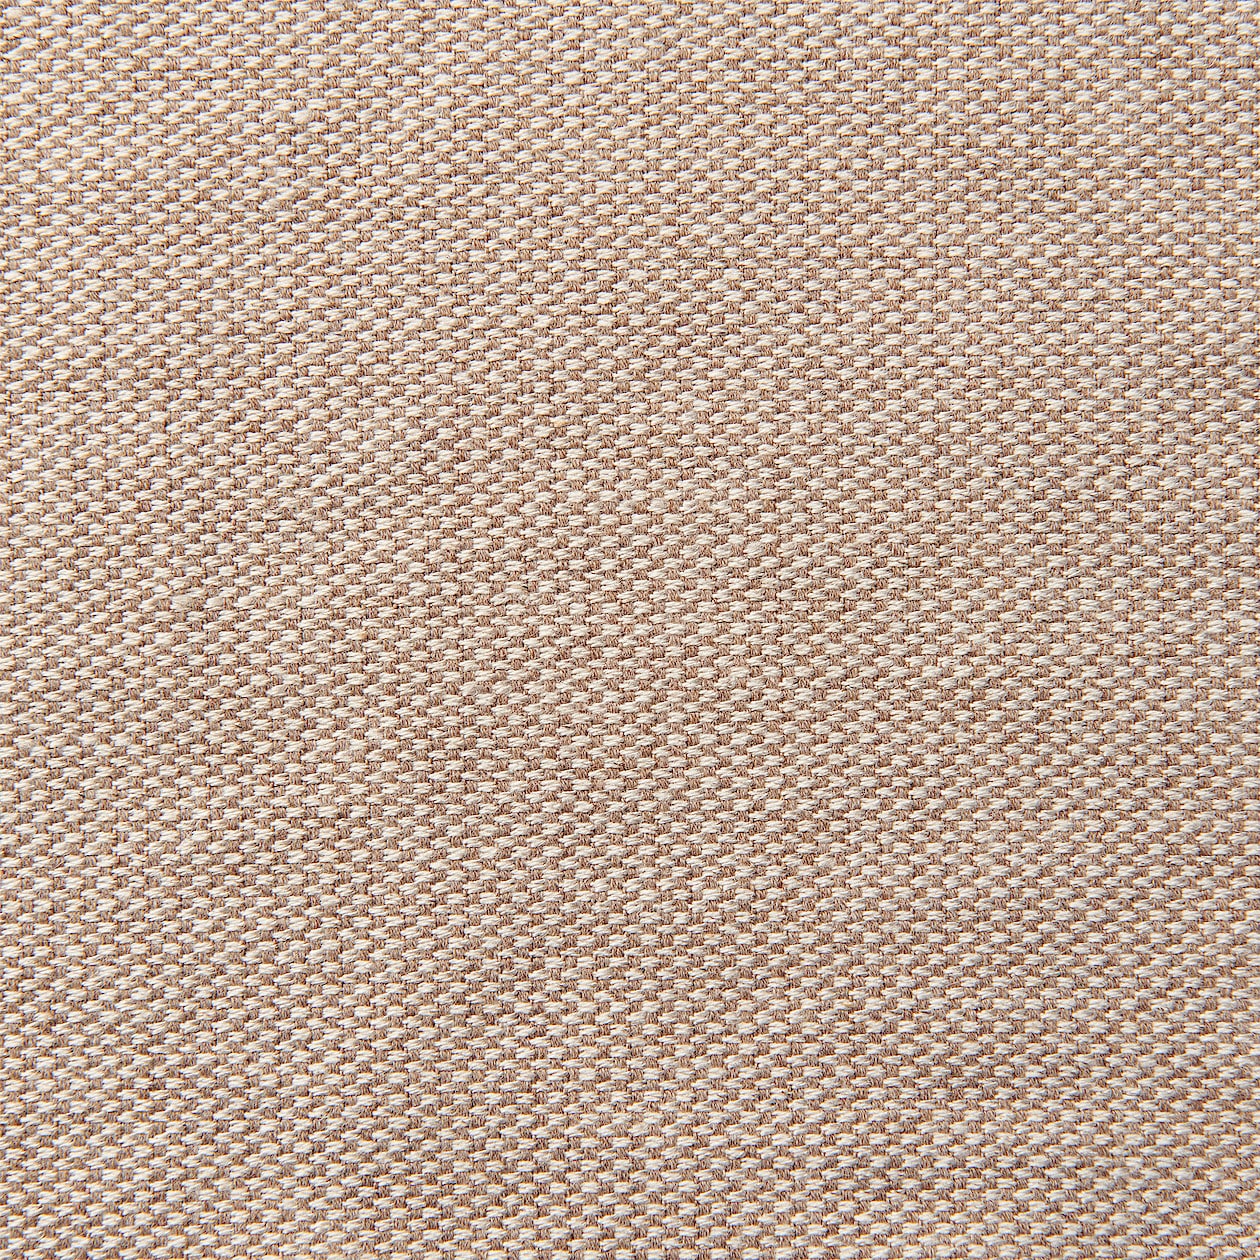 ウレタンポケットコイルソファ 2S カバー 脚セット 綿麻バスケット織 | 無印良品